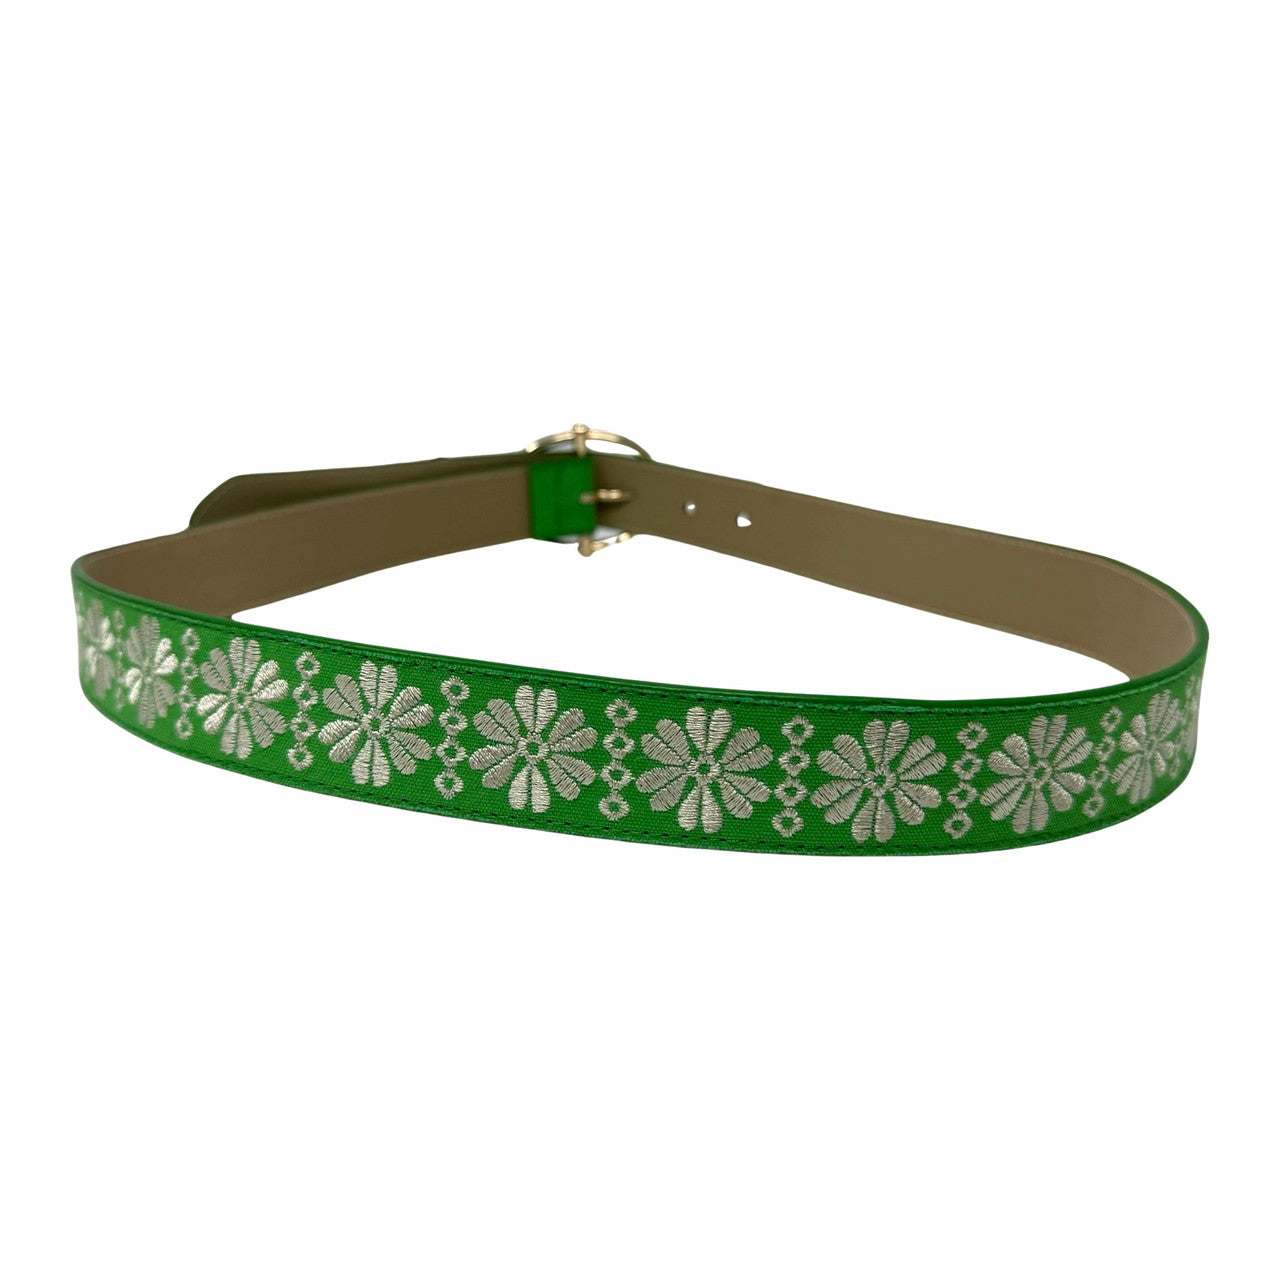 Linea Pelle Floral Embroidered Belt-Green Back